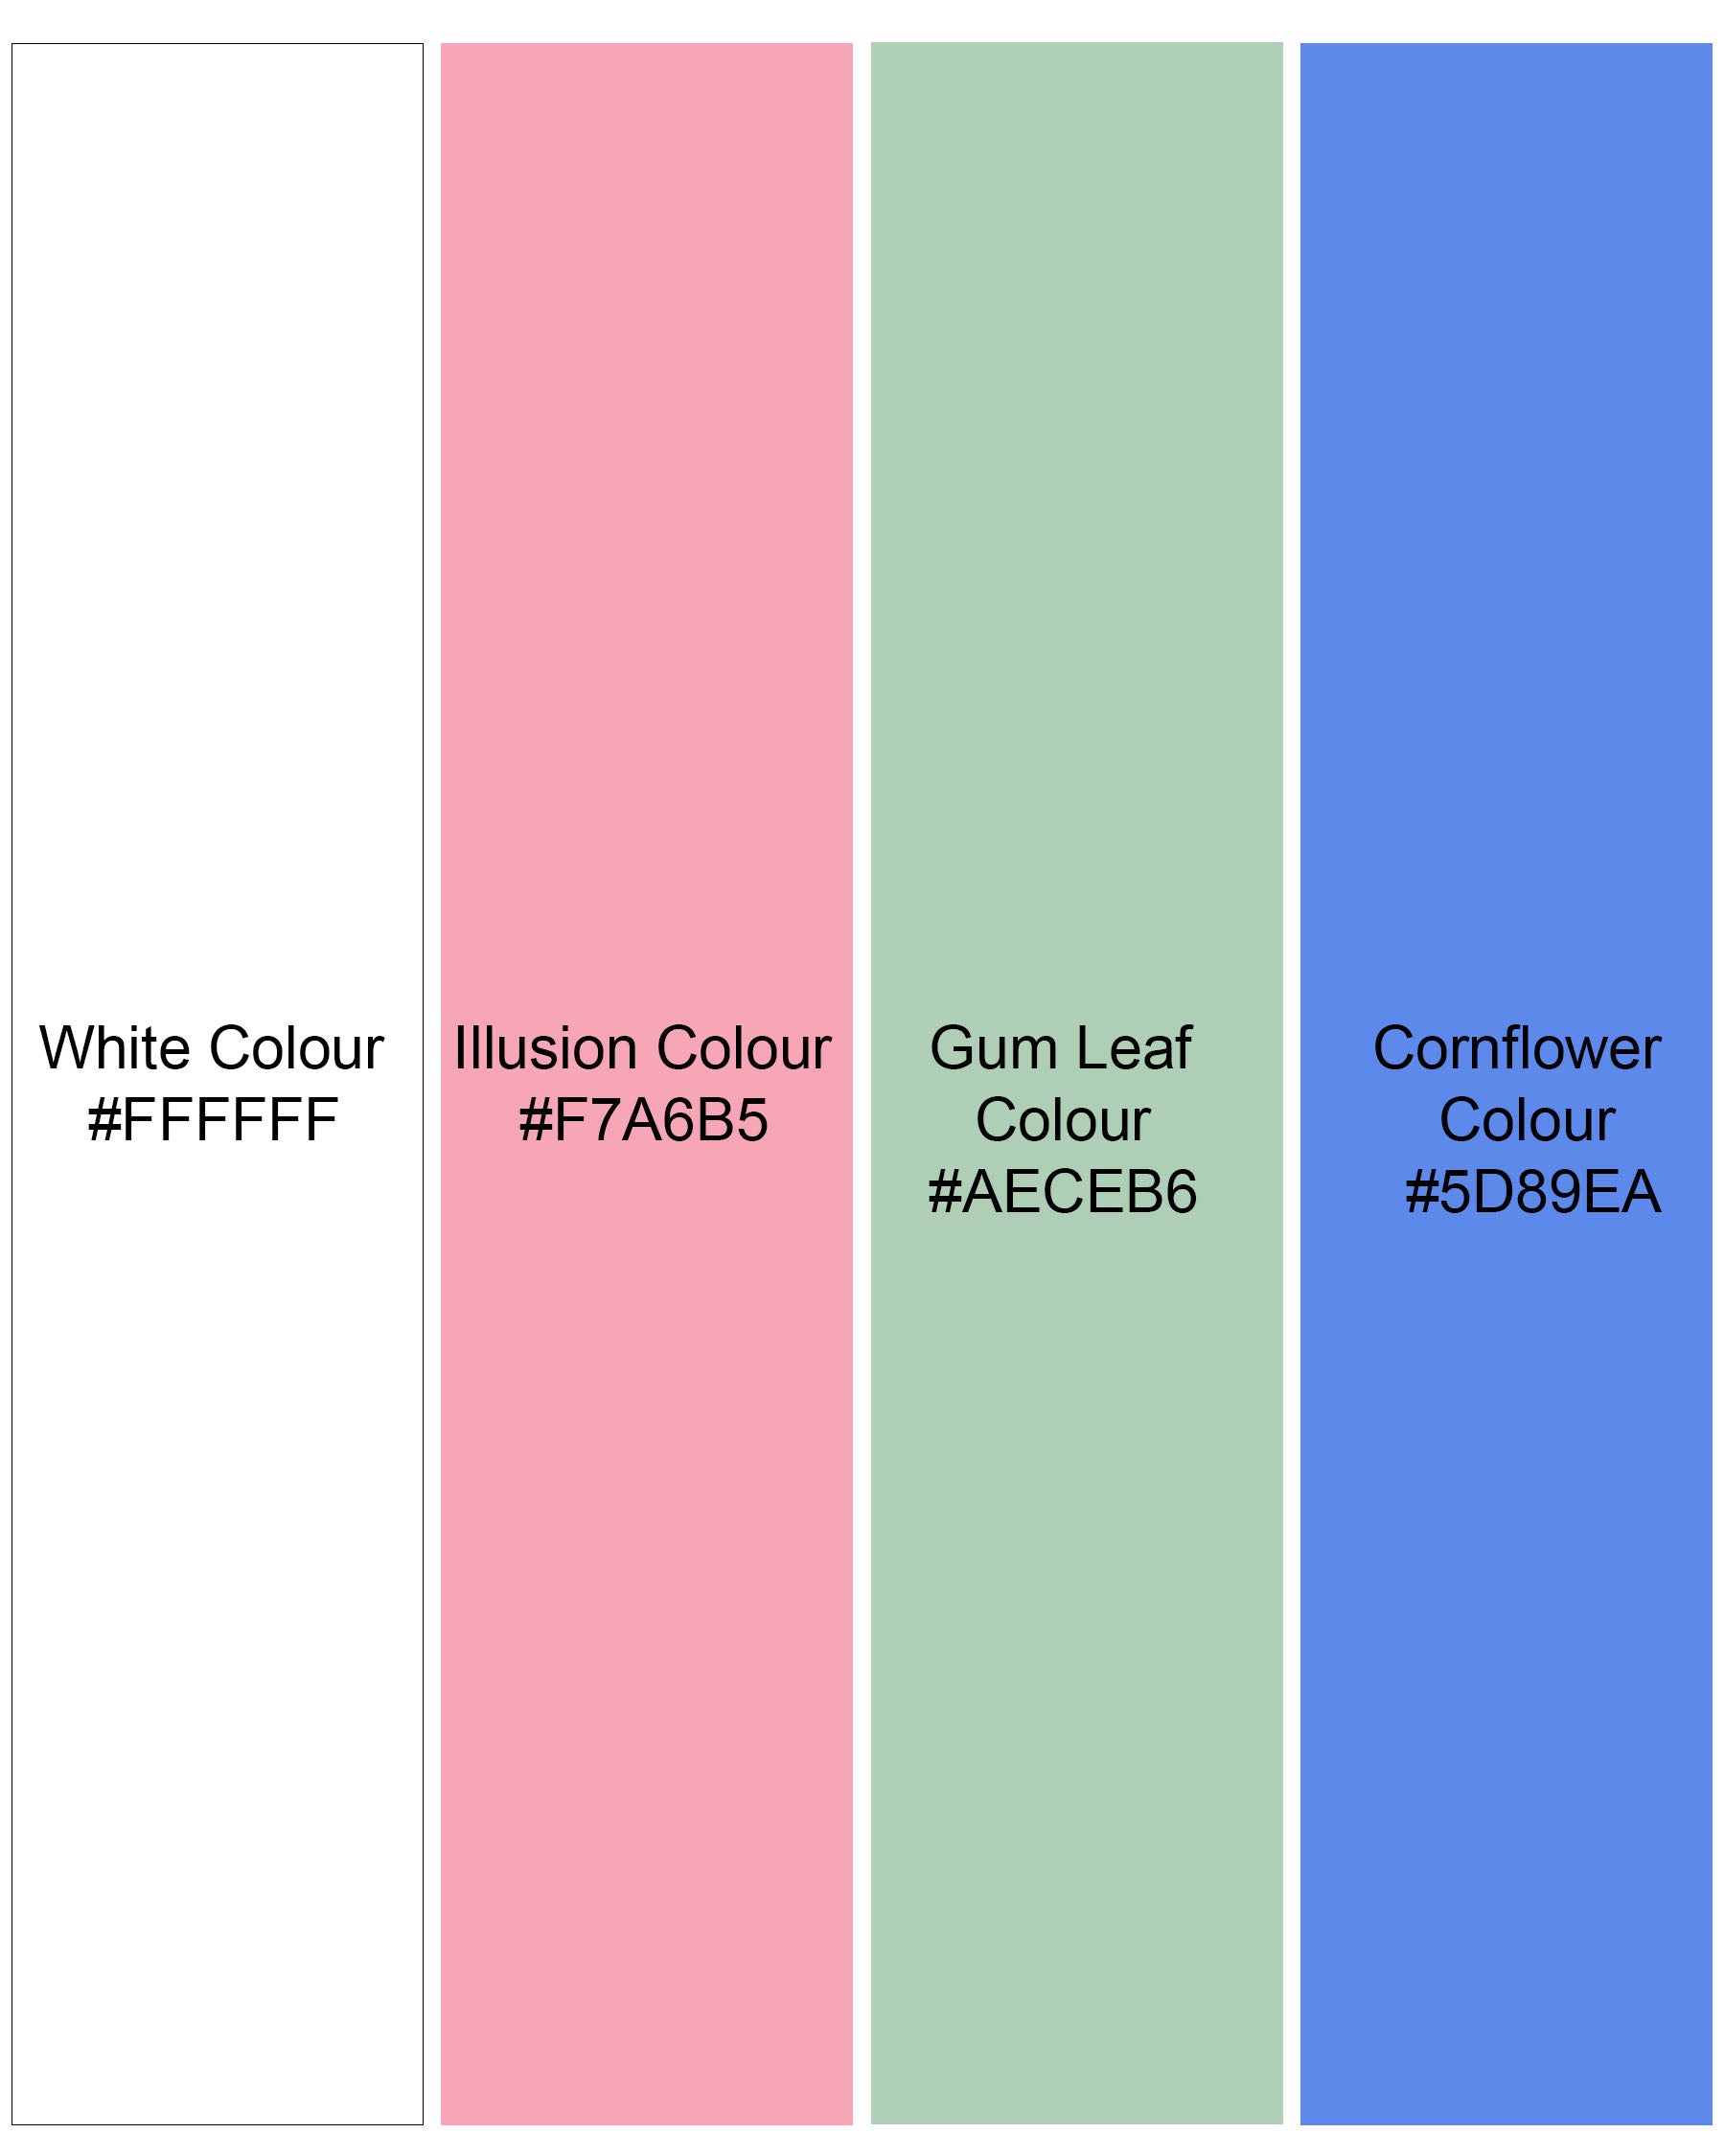 Cornflower Blue With Gum Leaf Green And Multicolored Striped Premium Cotton Shirt 7892-CA-38, 7892-CA-H-38, 7892-CA-39, 7892-CA-H-39, 7892-CA-40, 7892-CA-H-40, 7892-CA-42, 7892-CA-H-42, 7892-CA-44, 7892-CA-H-44, 7892-CA-46, 7892-CA-H-46, 7892-CA-48, 7892-CA-H-48, 7892-CA-50, 7892-CA-H-50, 7892-CA-52, 7892-CA-H-52